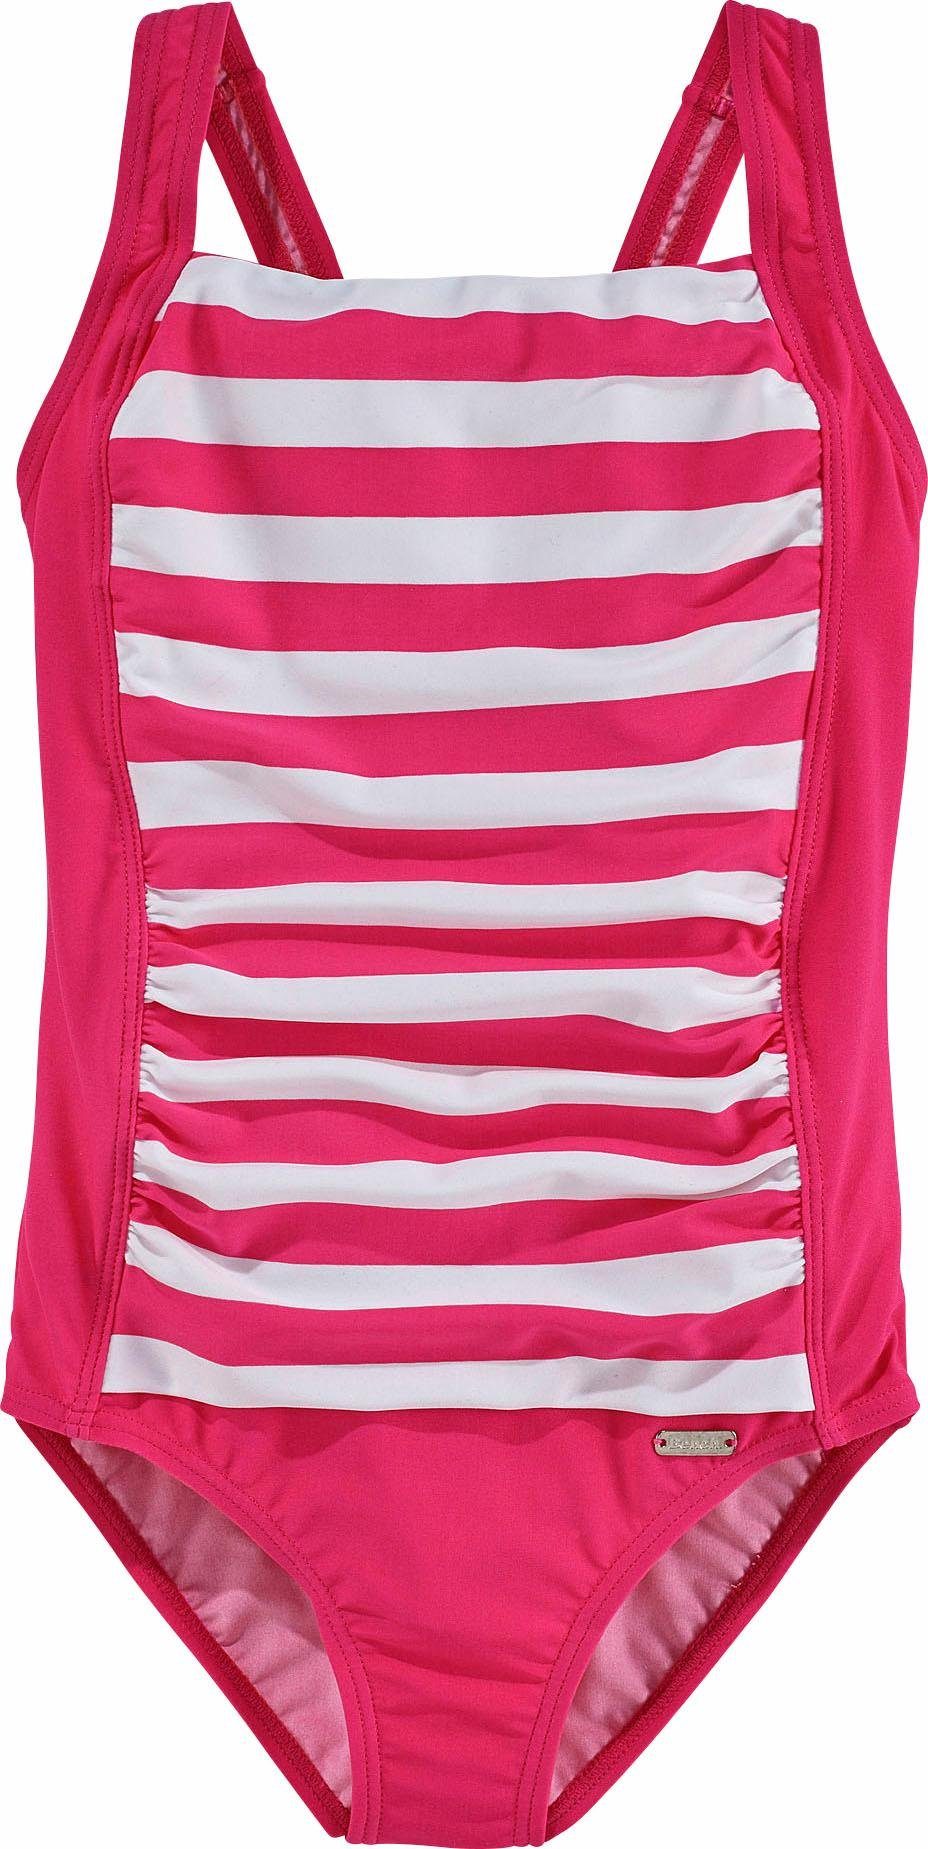 Streifen trendigen Badeanzug mit Bench. pink-weiß